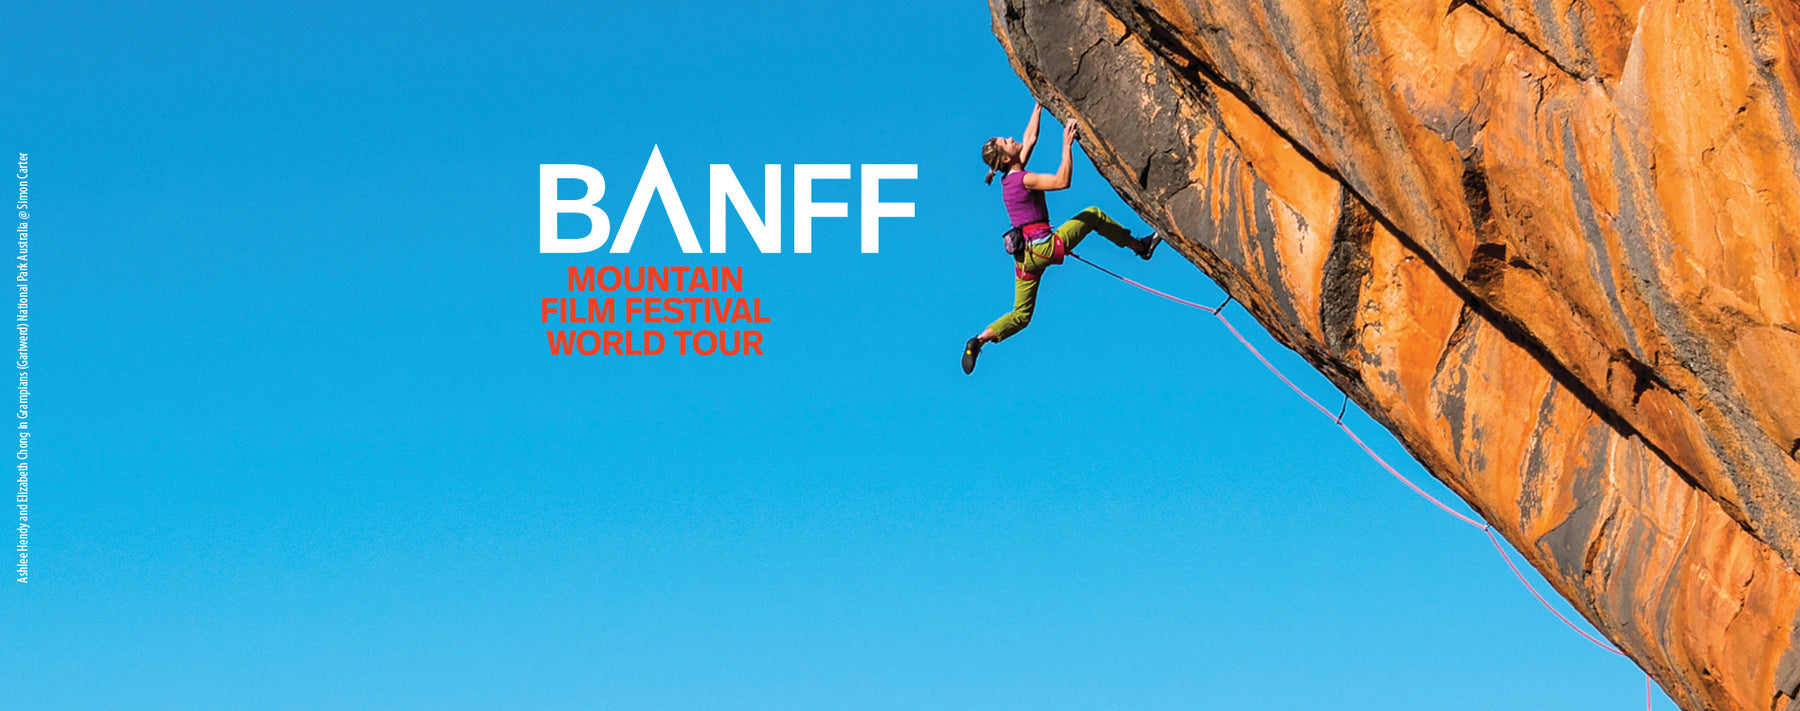 Banff Film Festival - Feb 10th - 12th